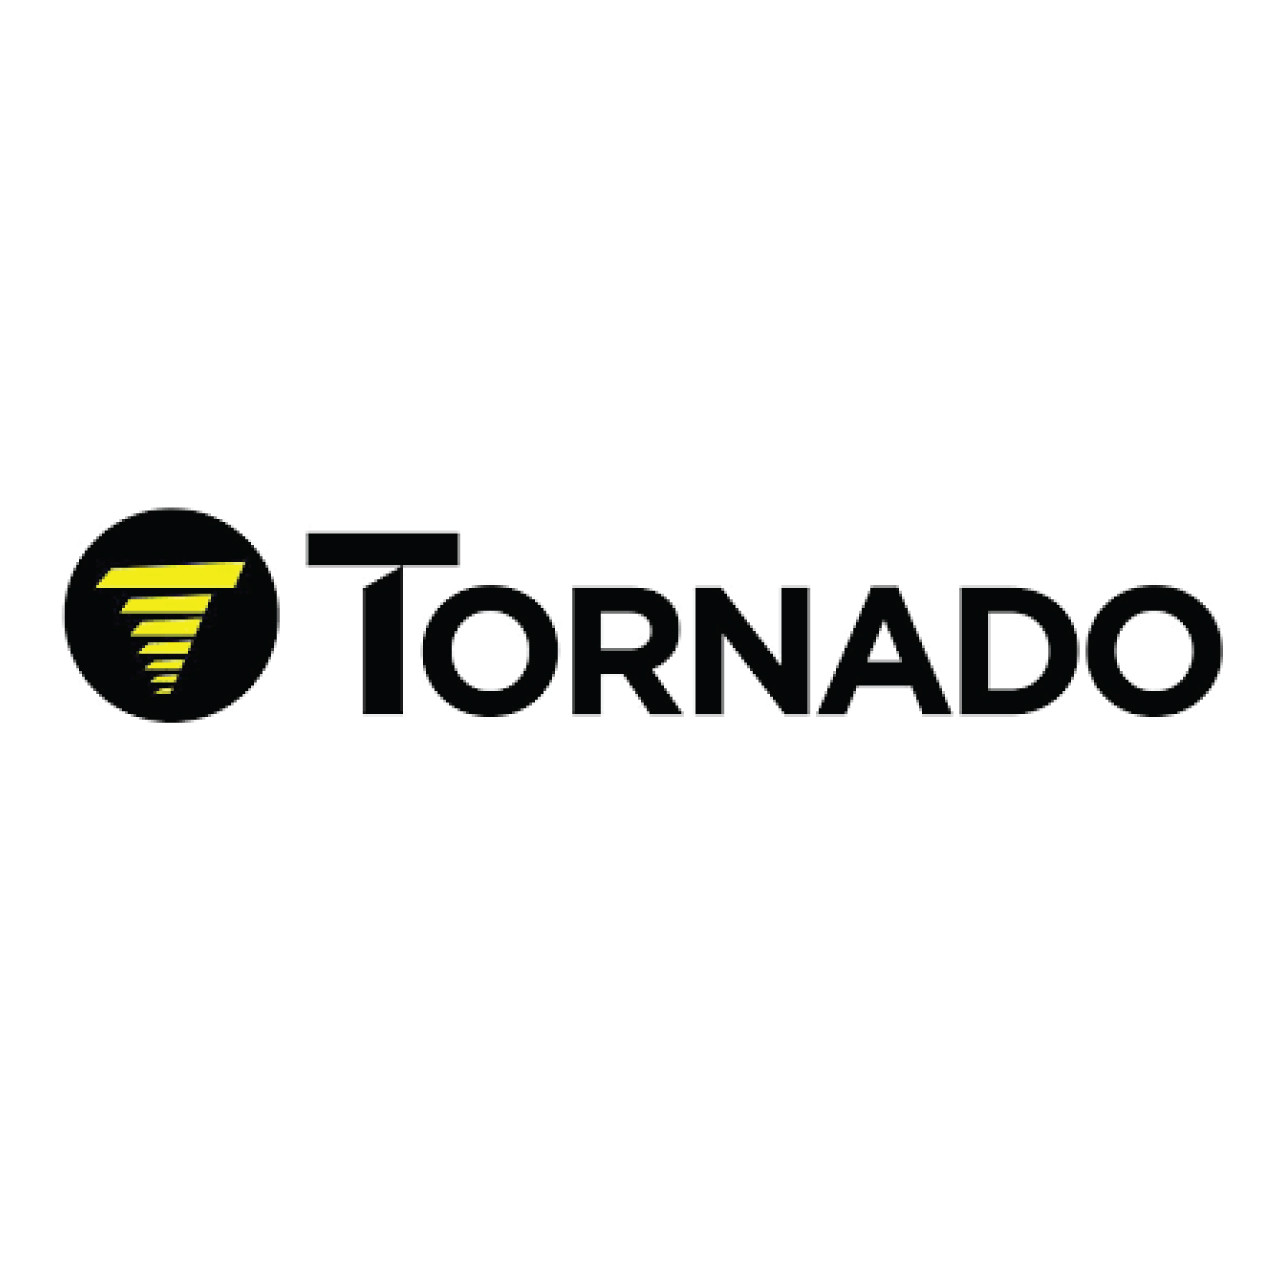 01959-313N, Tornado 01959-313N, Tornado DIRT CUP, Tornado parts